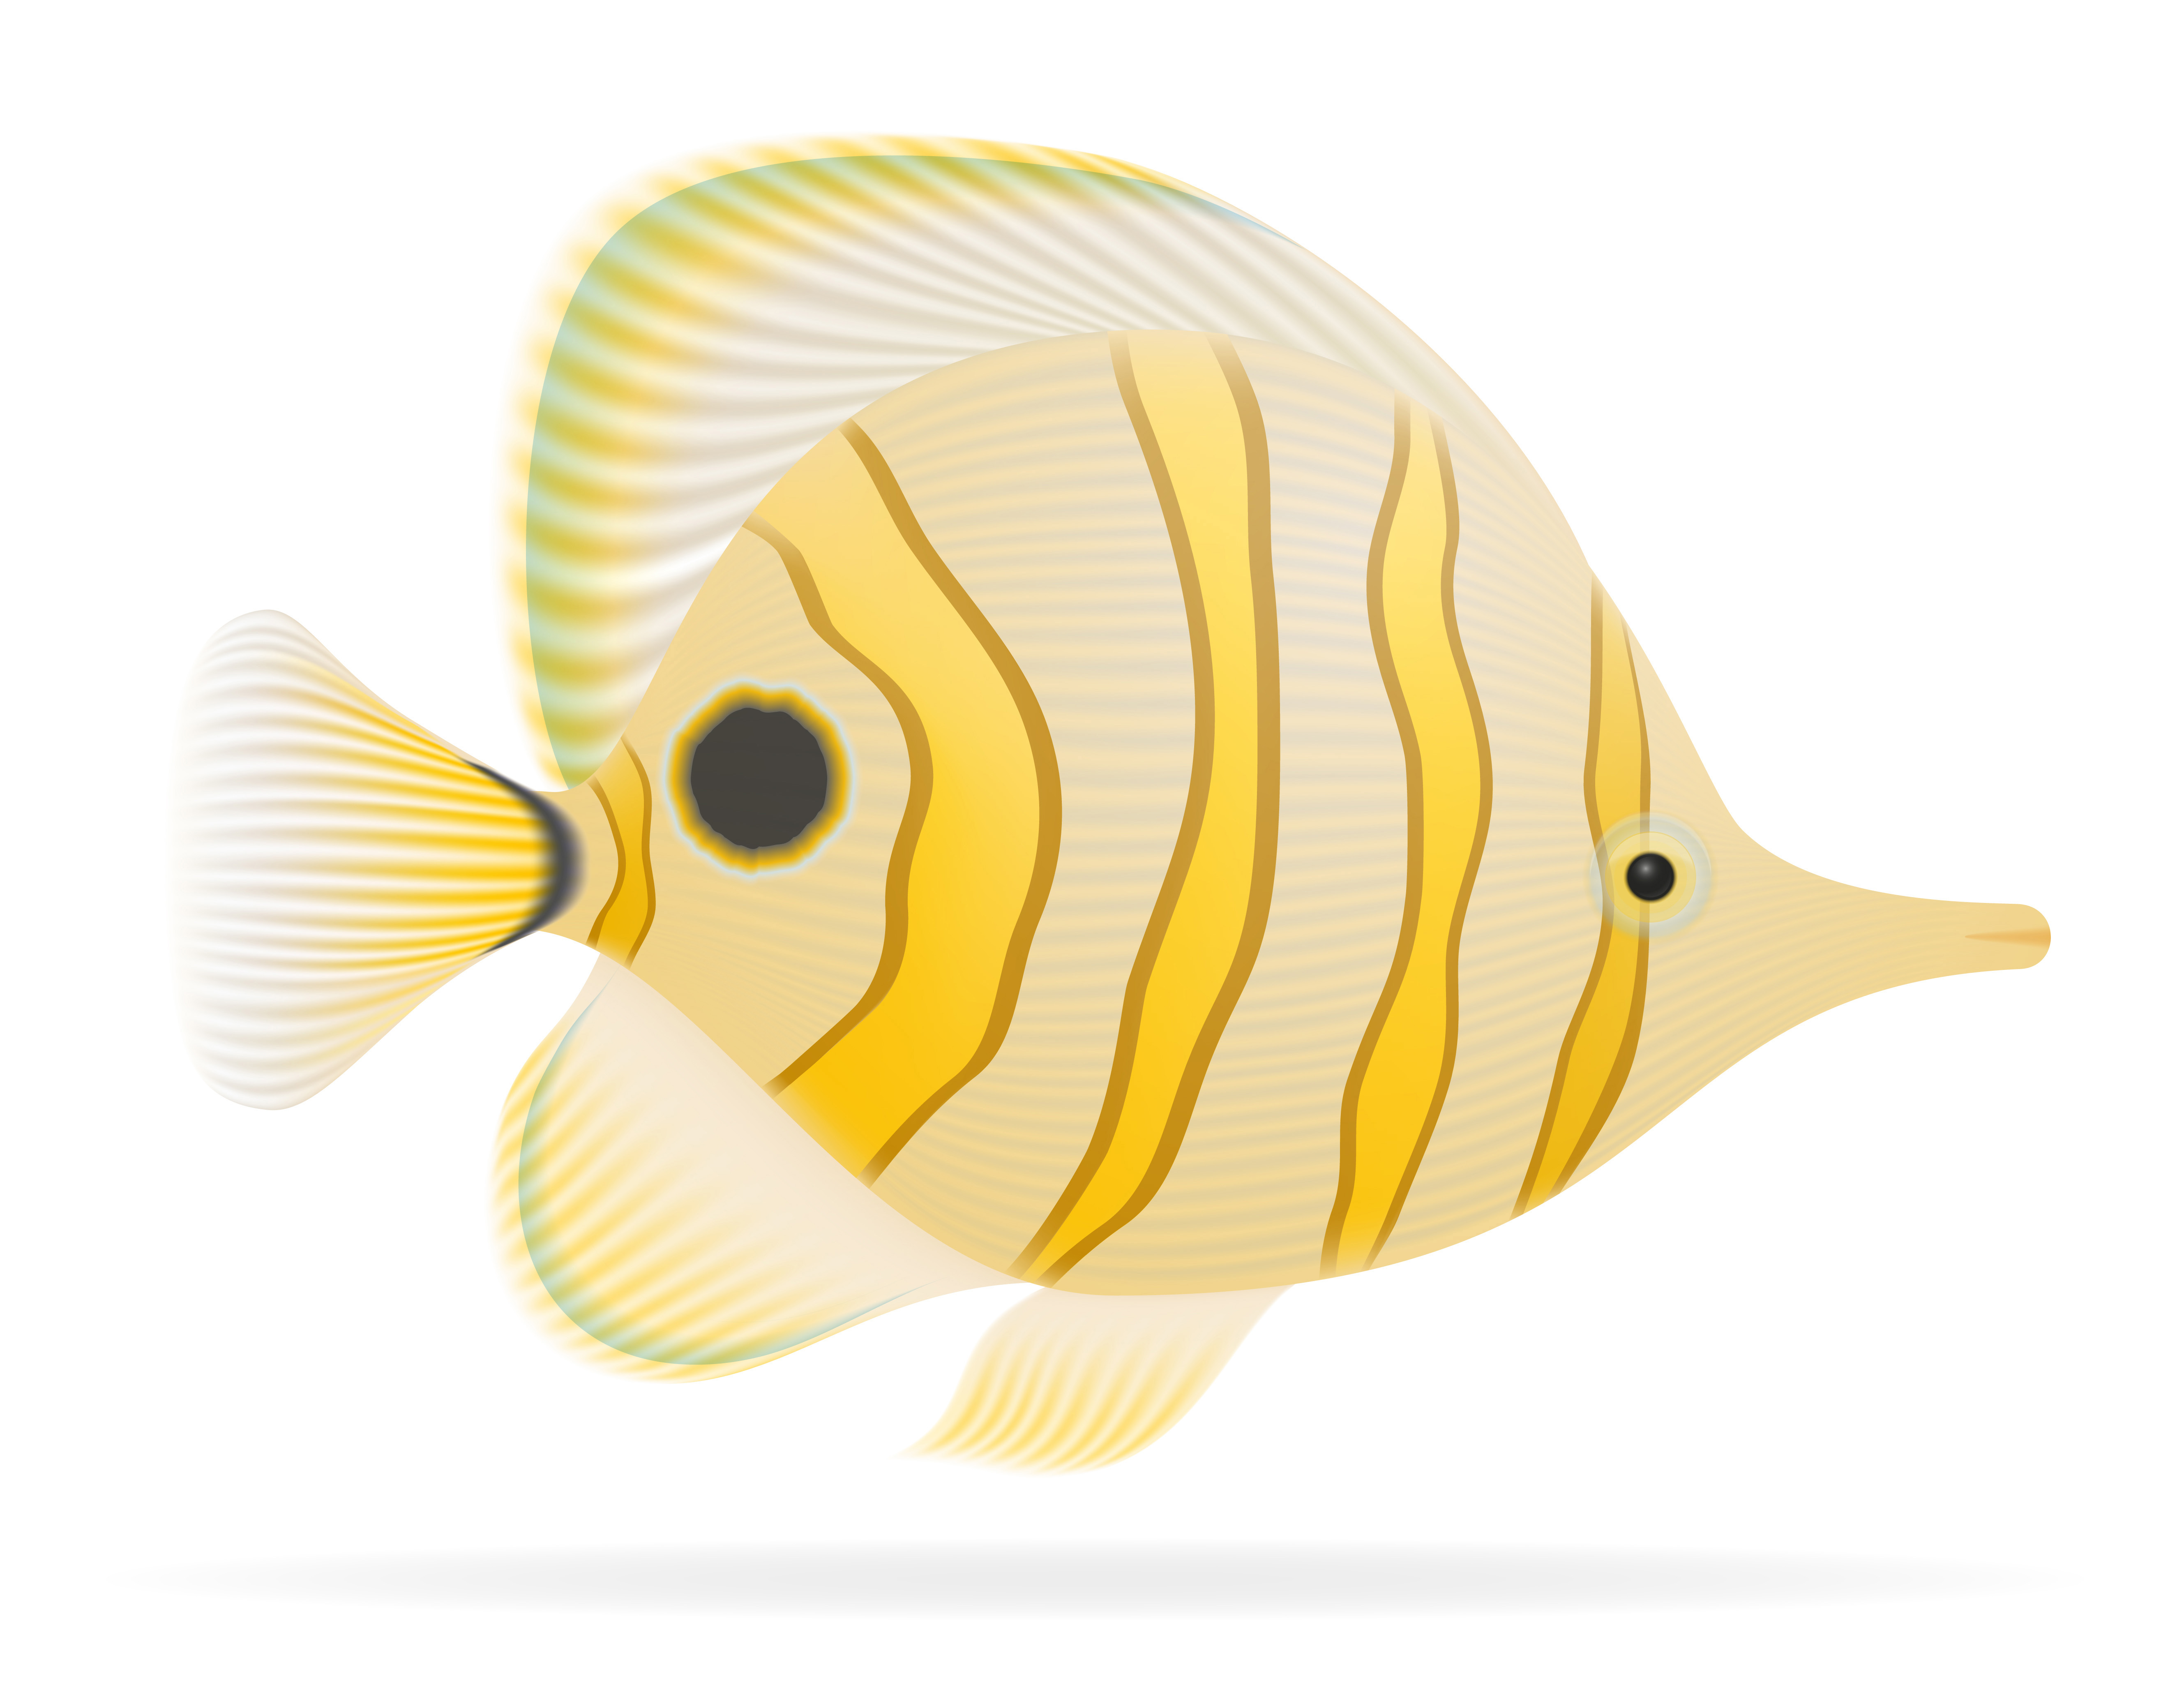 Download aquarium fish vector illustration - Download Free Vectors, Clipart Graphics & Vector Art